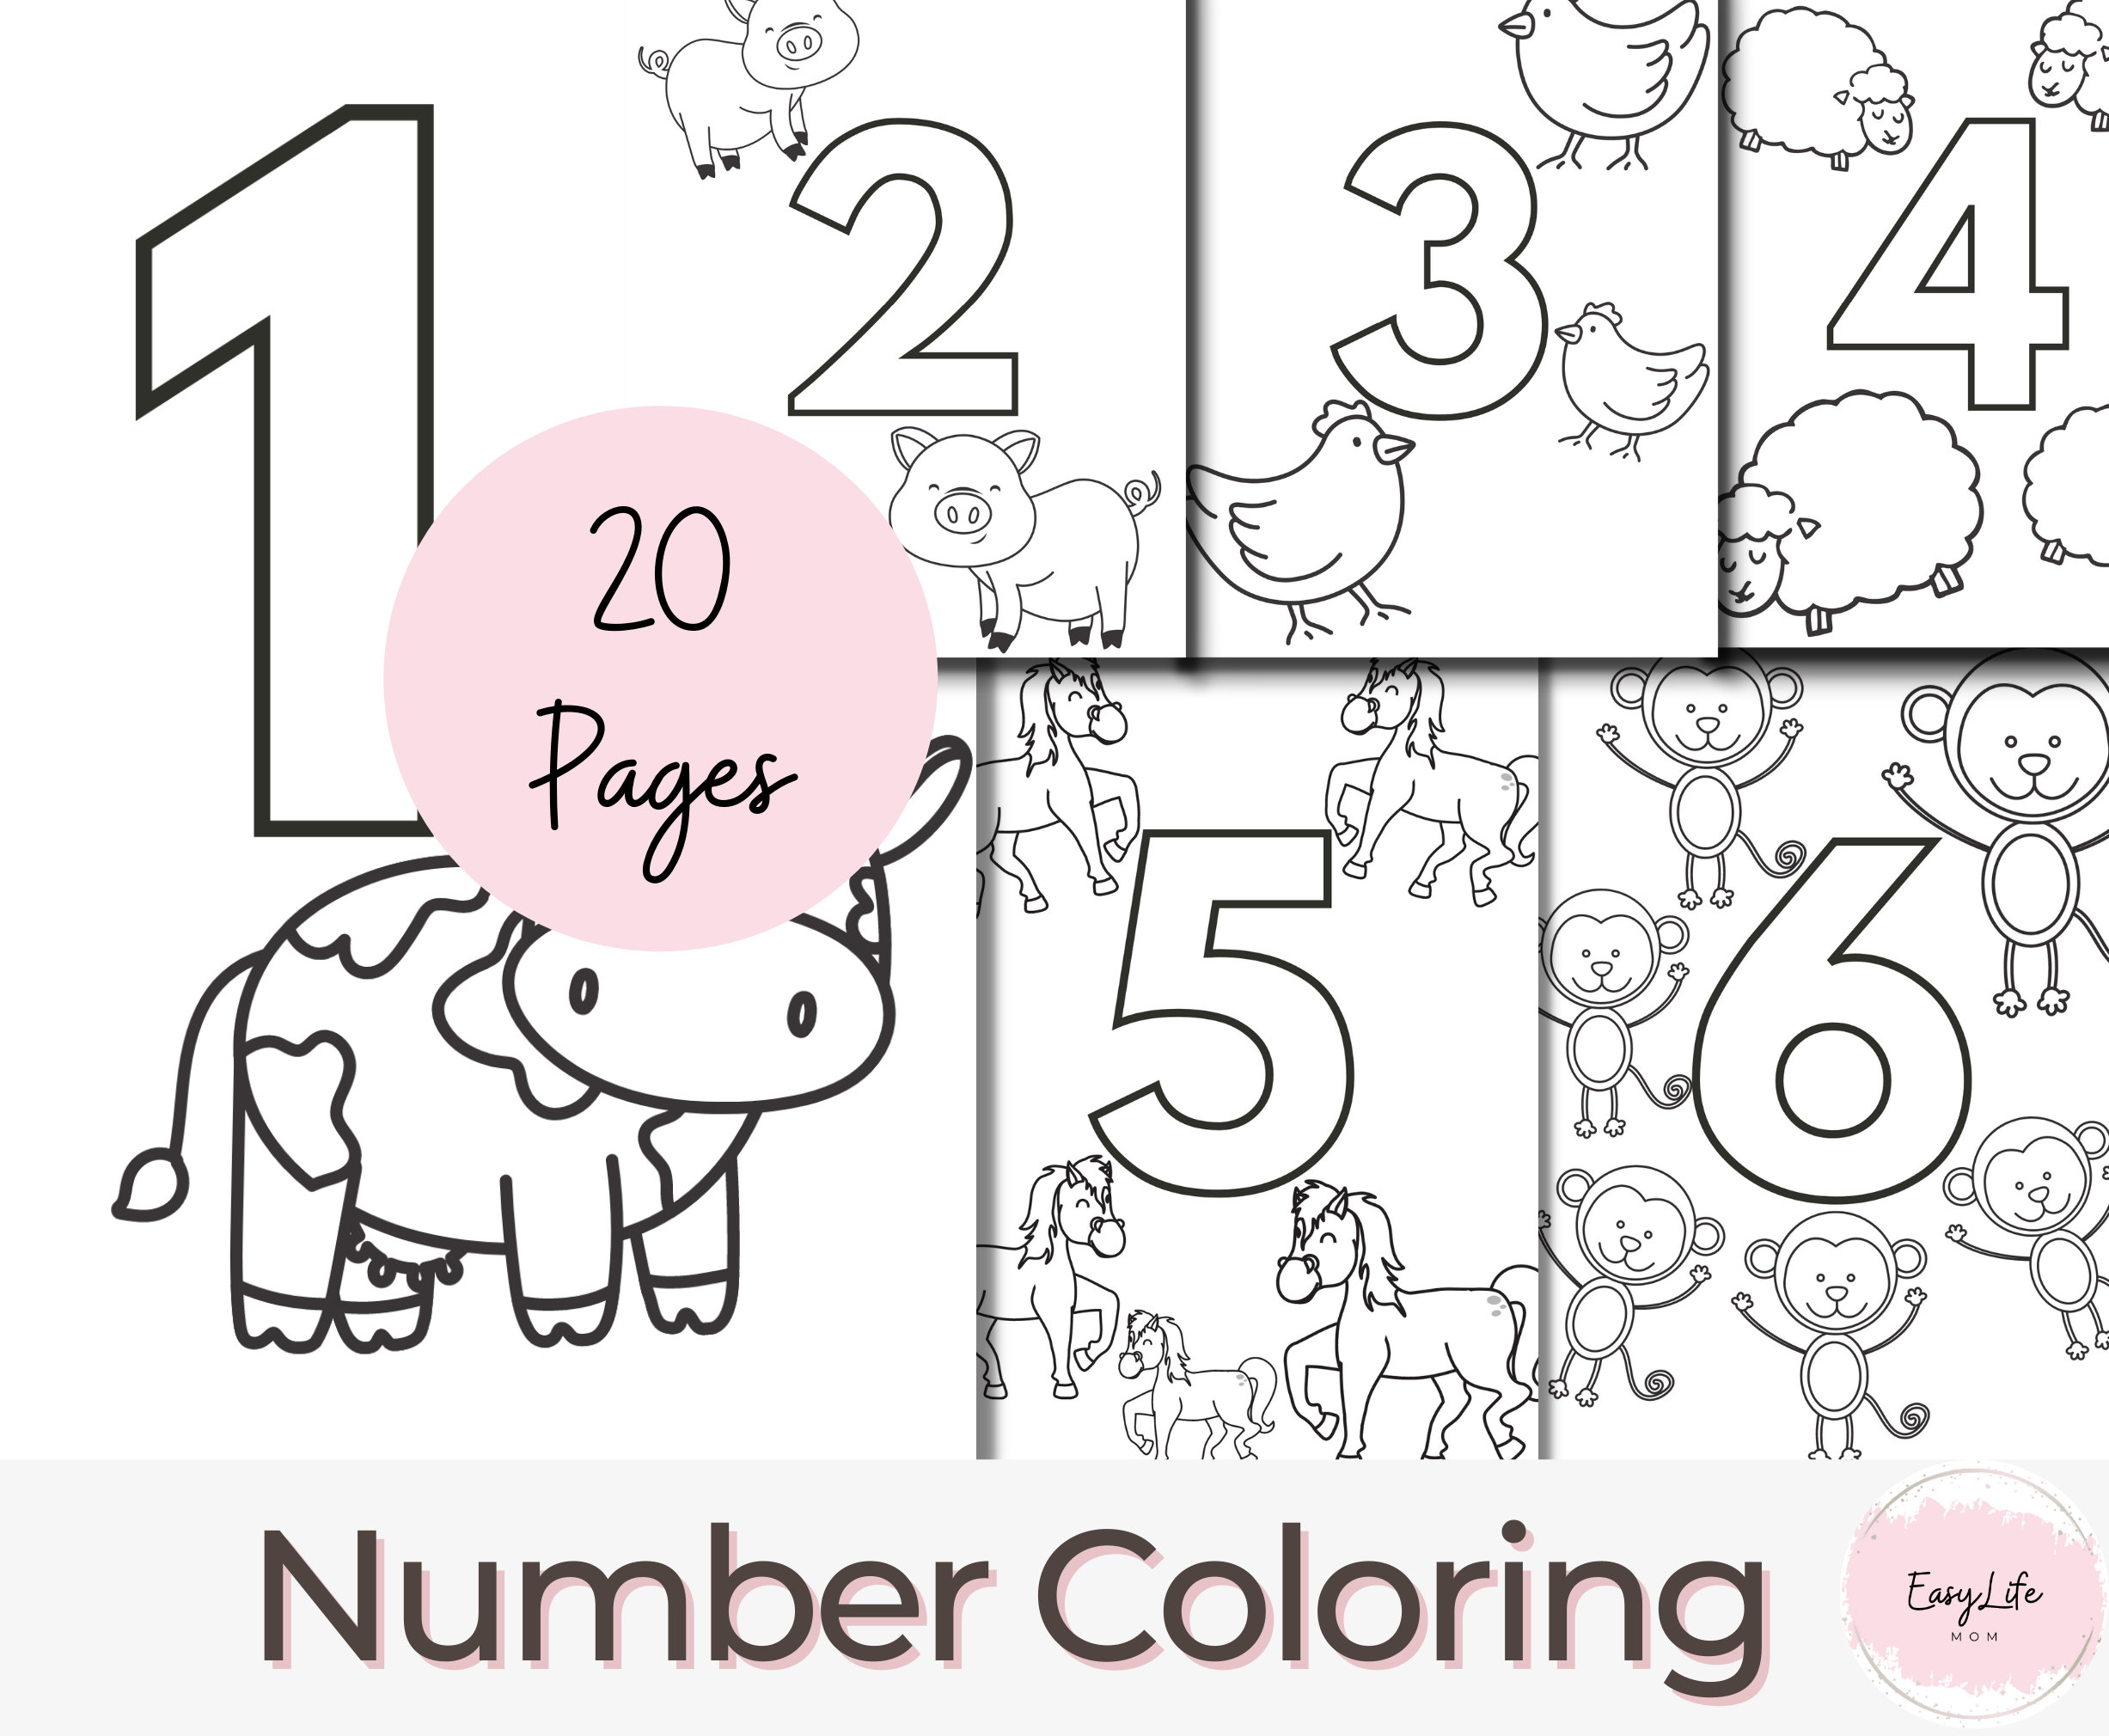 Printable numbers coloring pages coloring page preschool activities prek worksheets homeschool printable preschool sheets